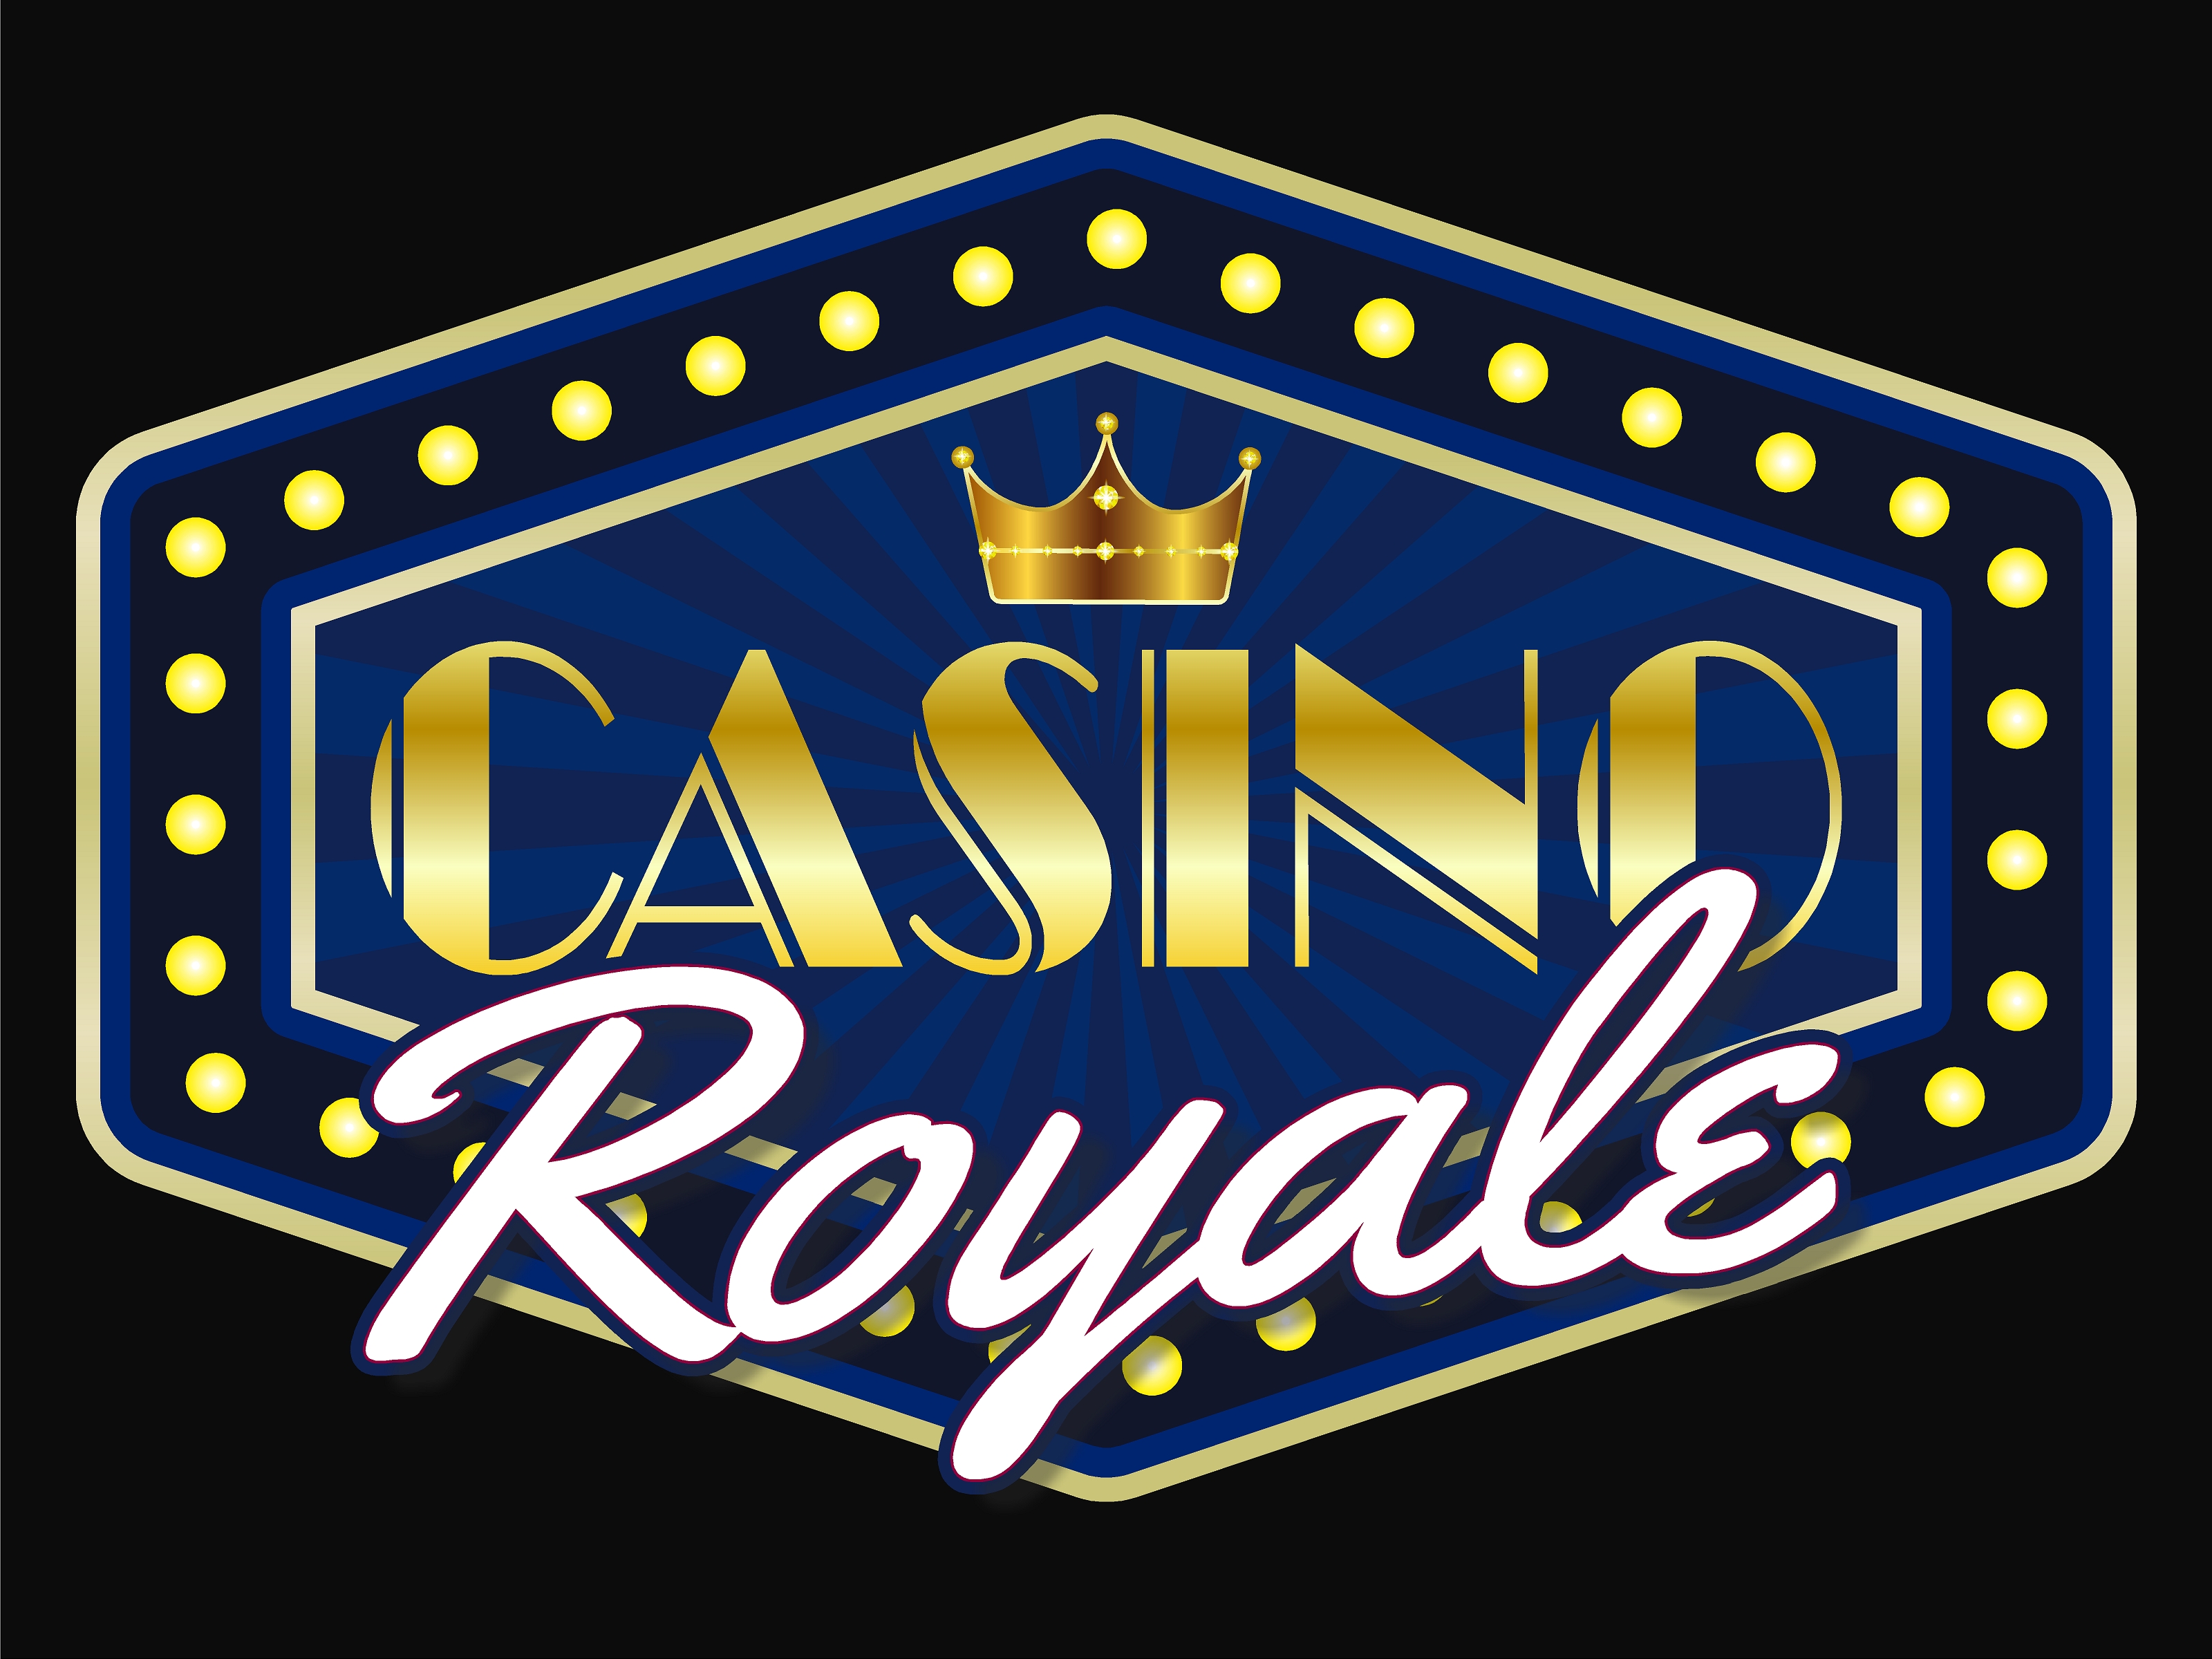 https://0901.nccdn.net/4_2/000/000/038/2d3/fk-grad-casino.jpg